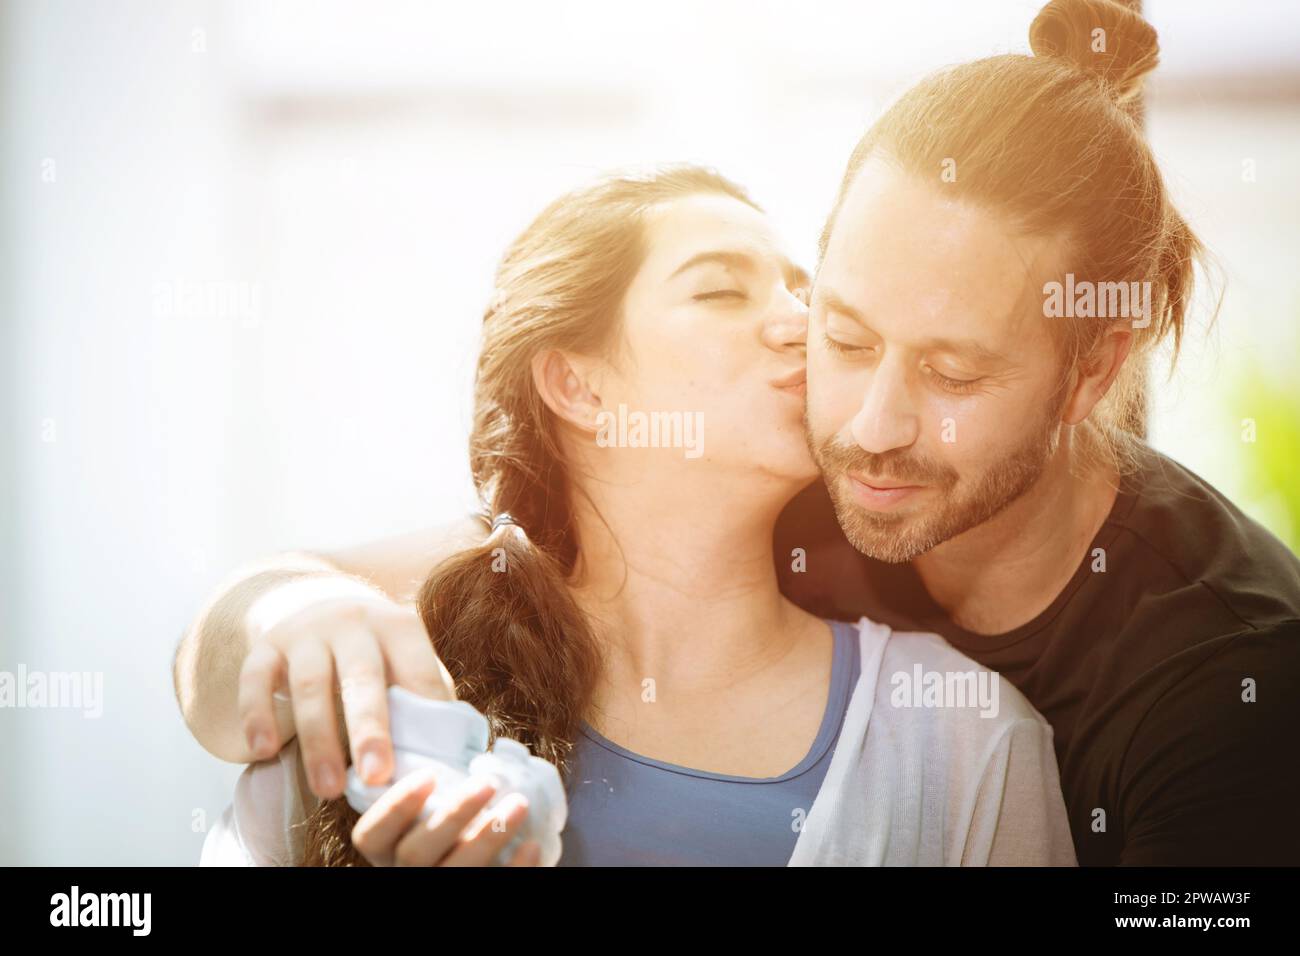 lateinamerikanischer Liebhaber, der sich zusammen küsst, mit warmem, sanftem Licht für verliebte Menschen Stockfoto